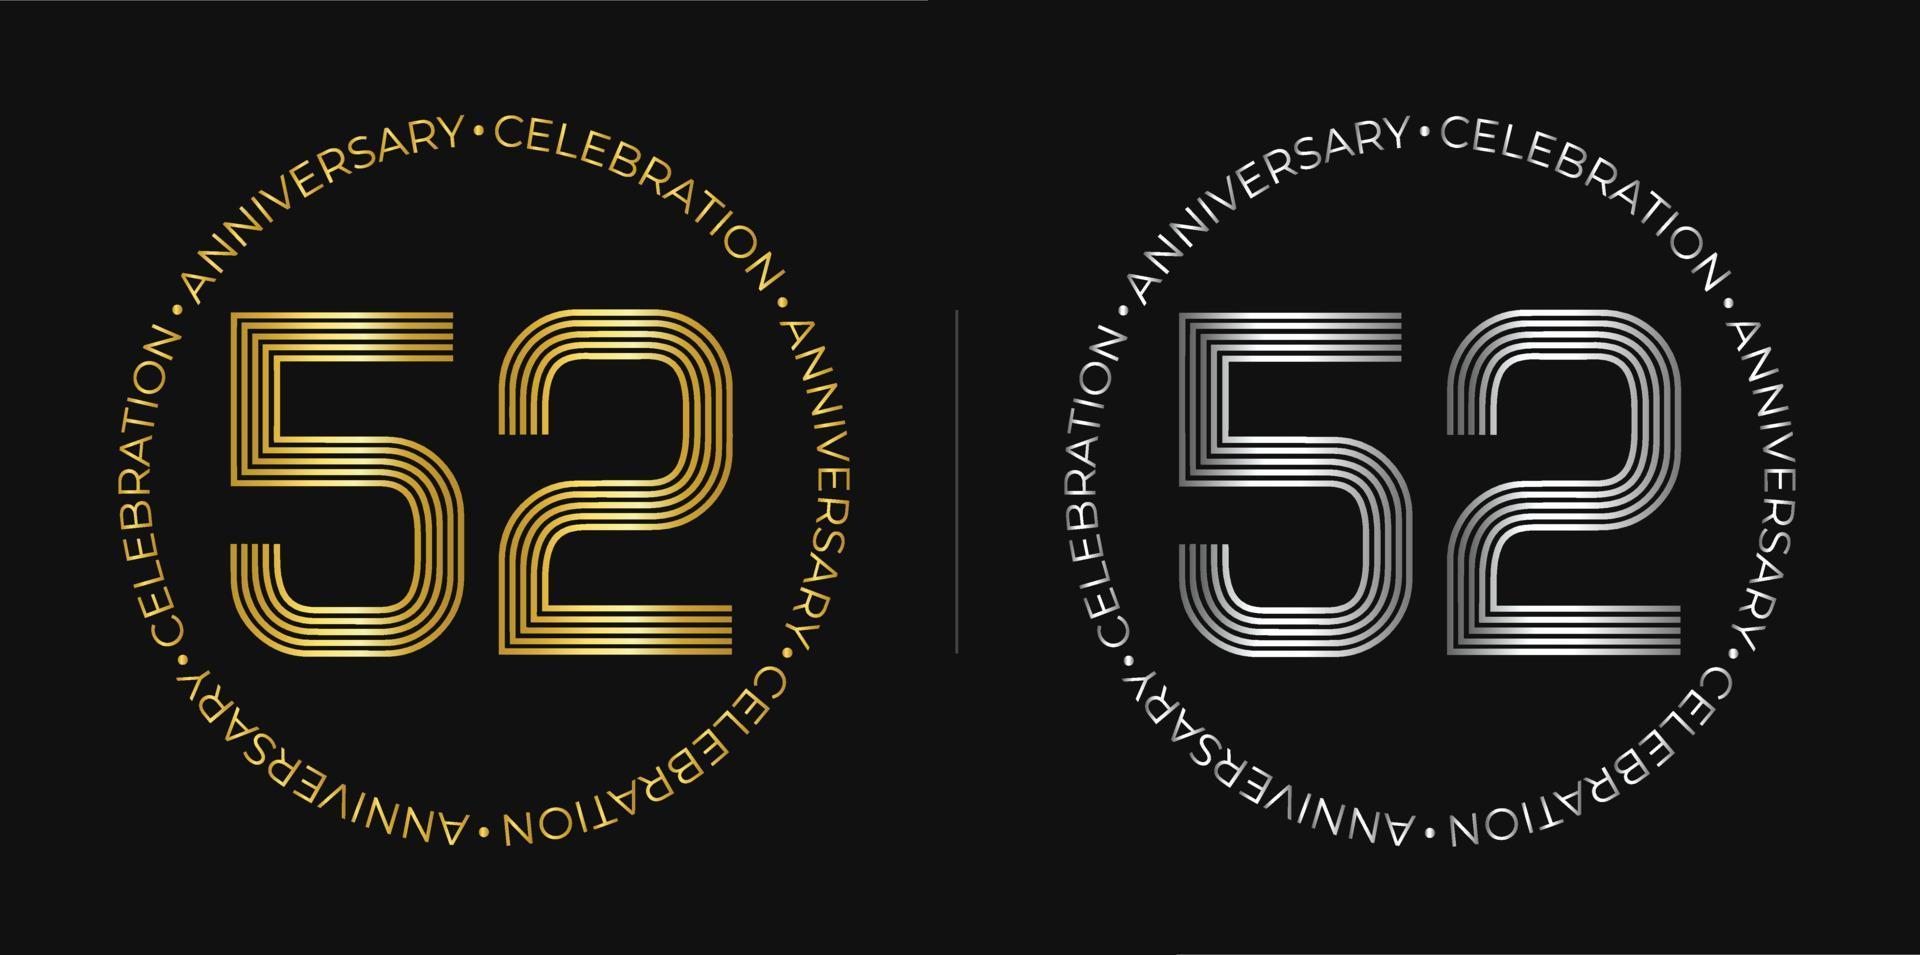 52 cumpleaños. cartel de celebración de aniversario de cincuenta y dos años en colores dorado y plateado. logo circular con diseño de números originales en líneas elegantes. vector